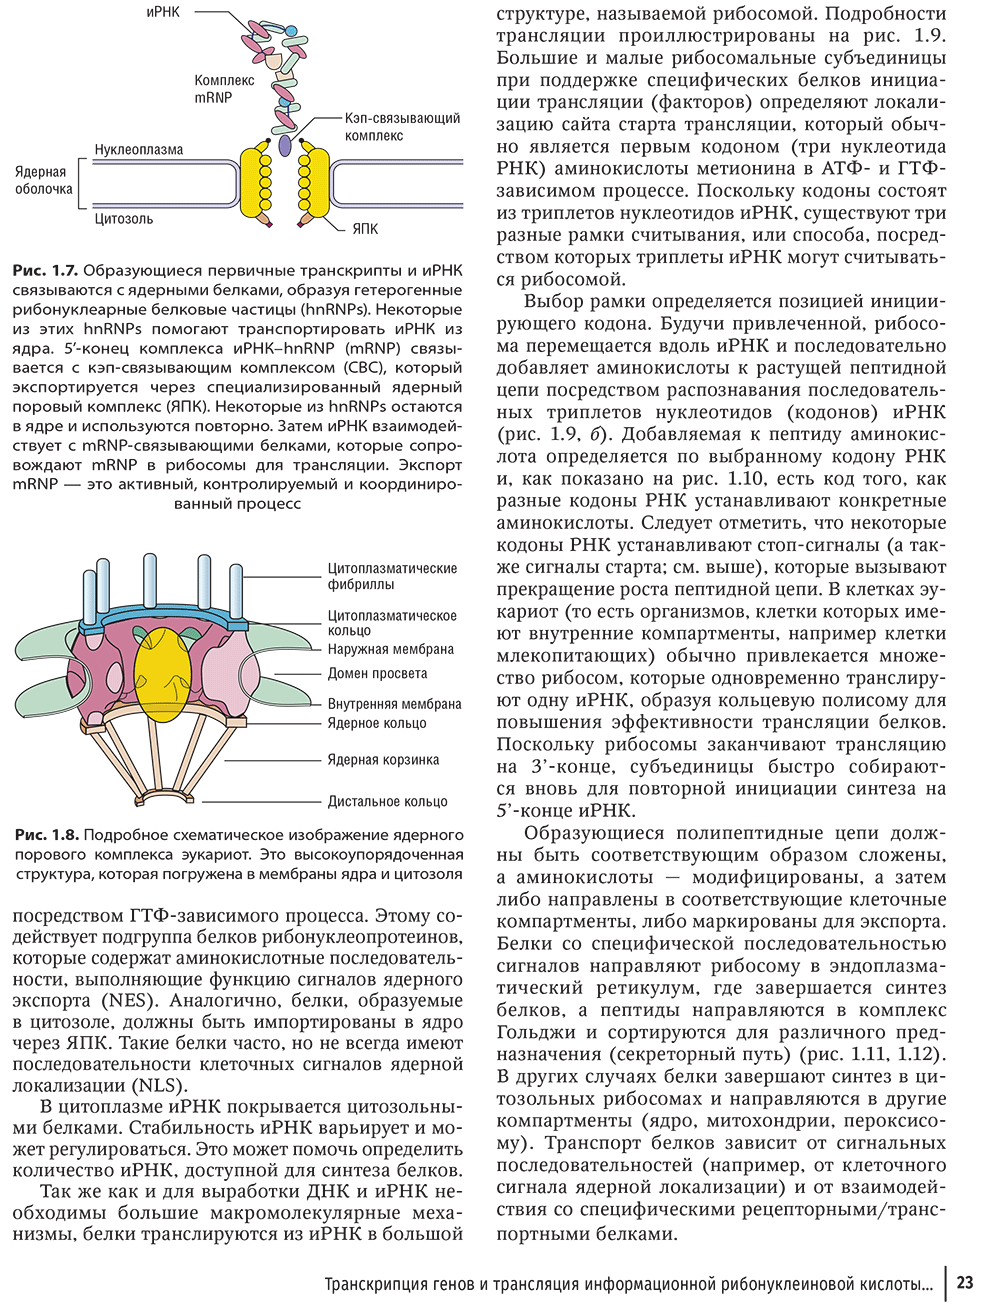 Рис. 1.8. Подробное схематическое изображение ядерного порового комплекса эукариот